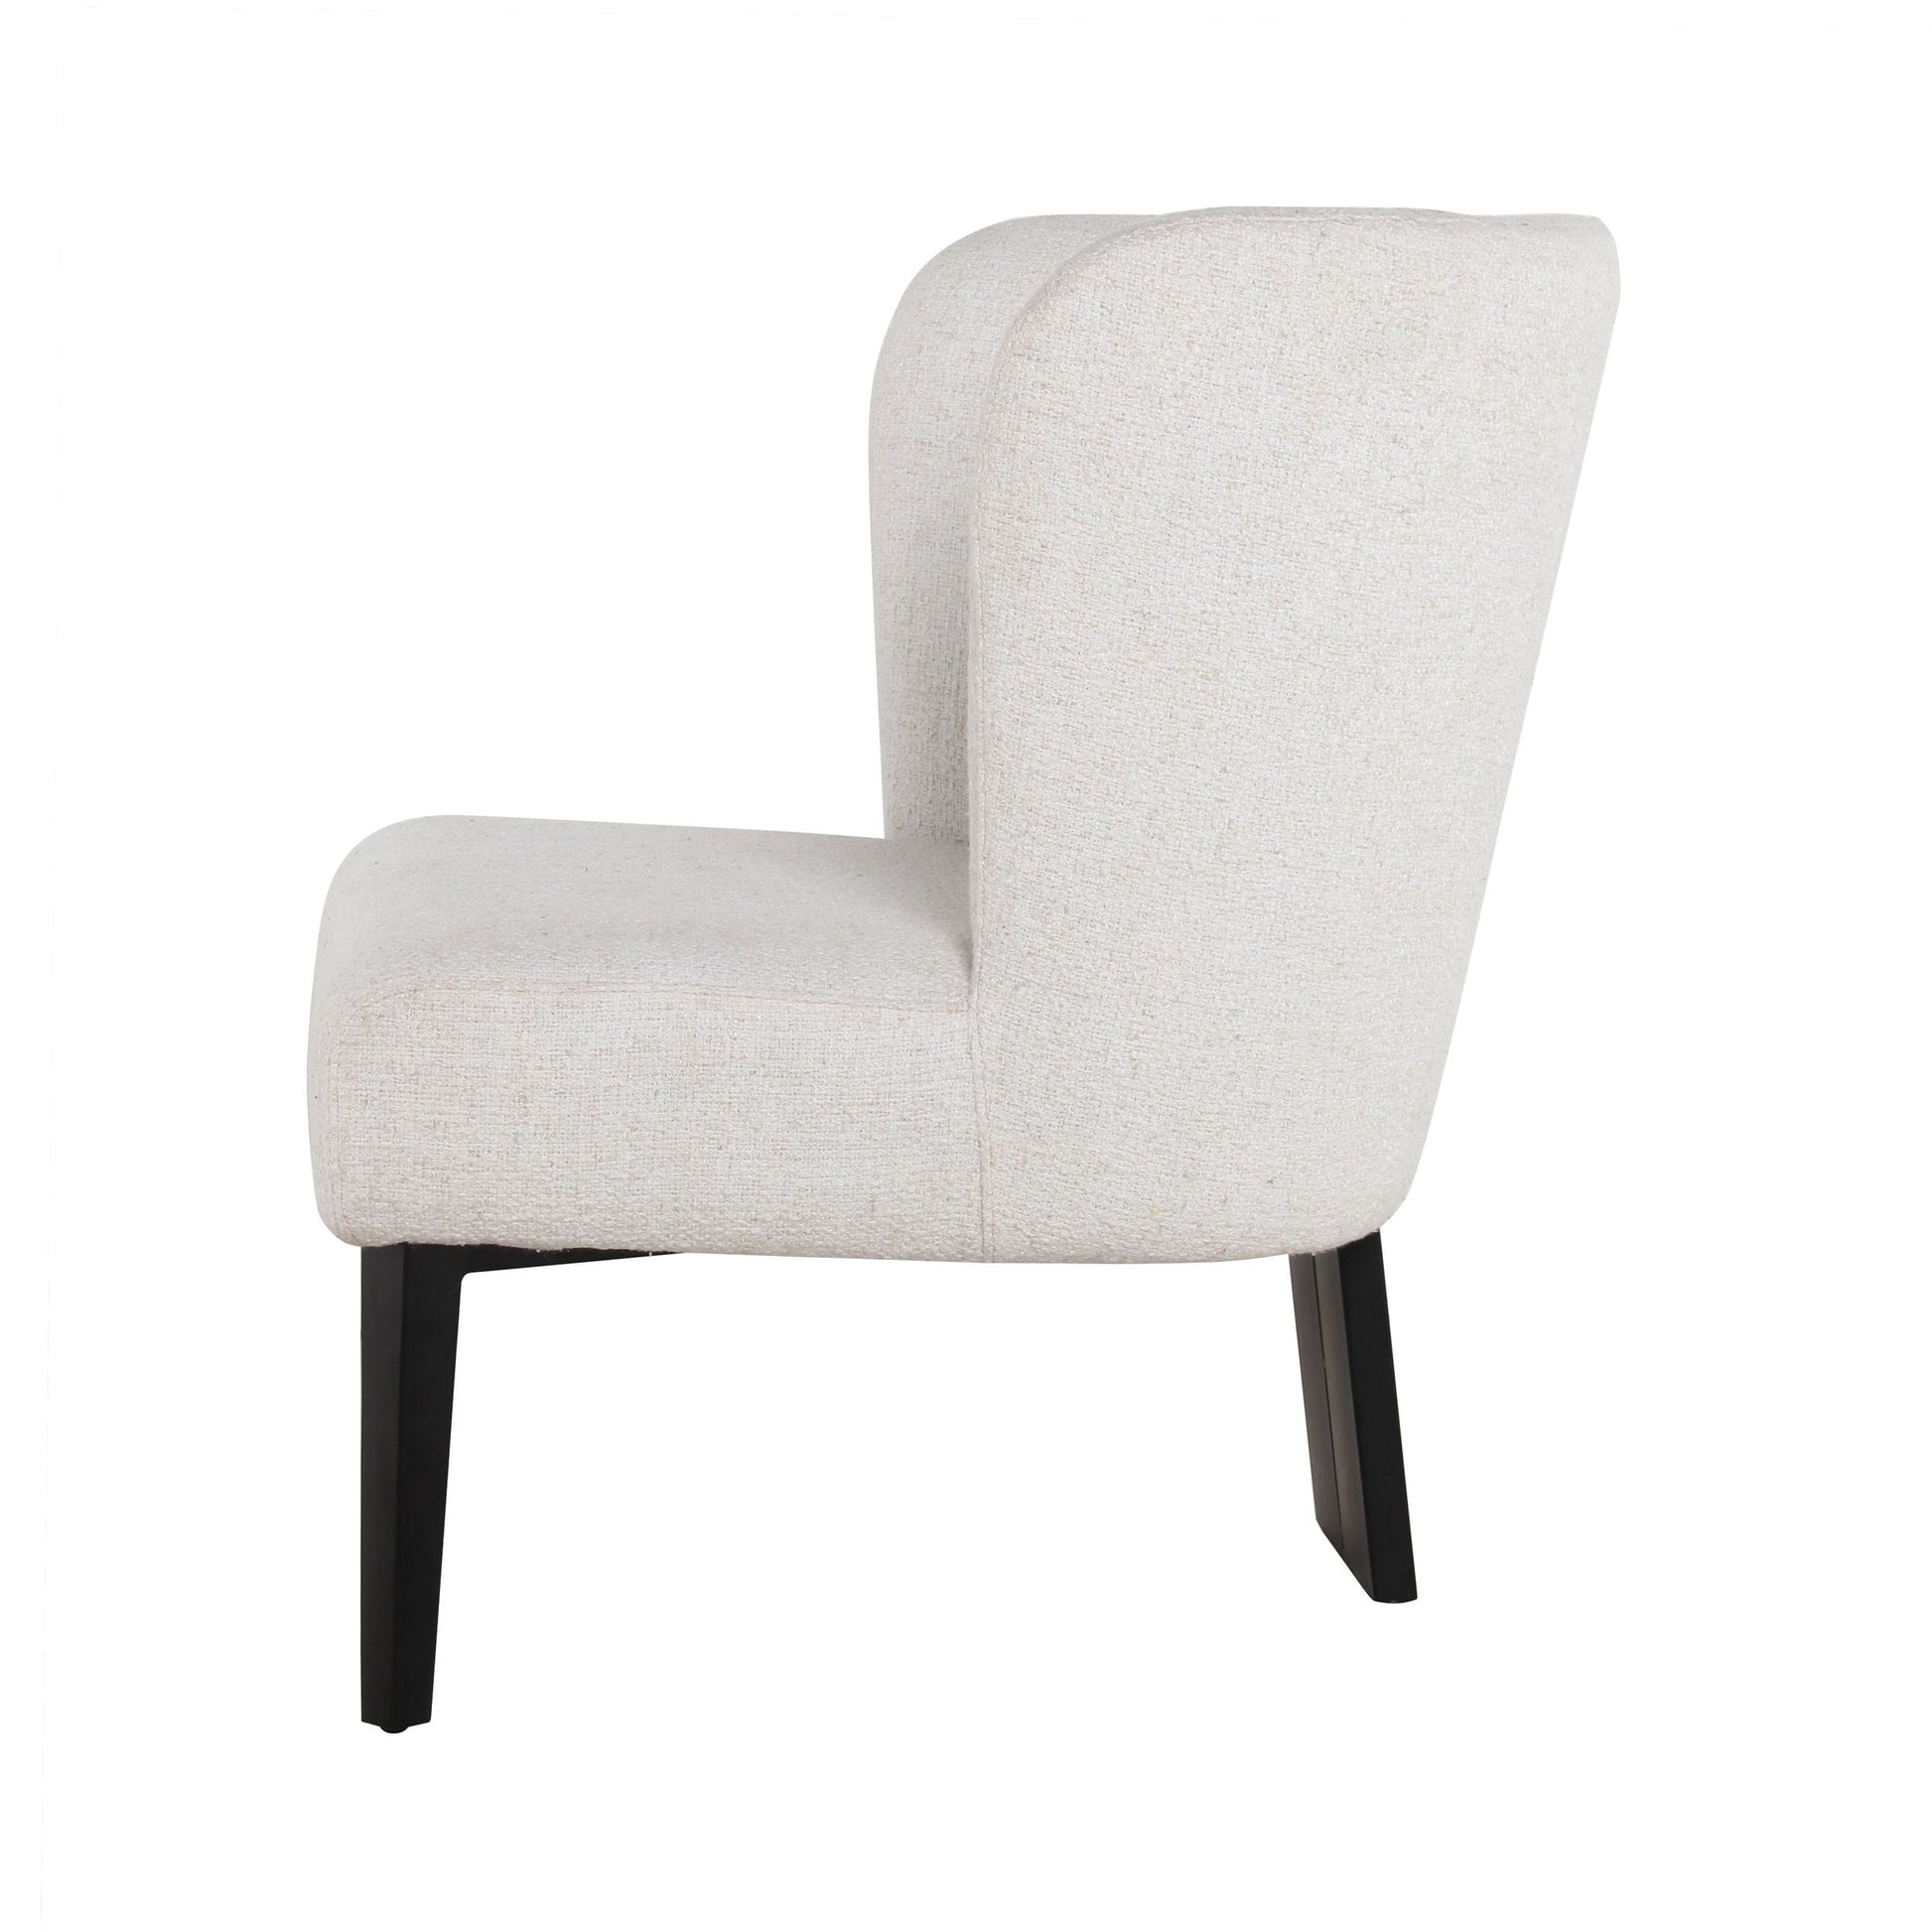 Divani Casa Ladean - Modern White Accent Chair | Lounge Chairs | Modishstore - 3